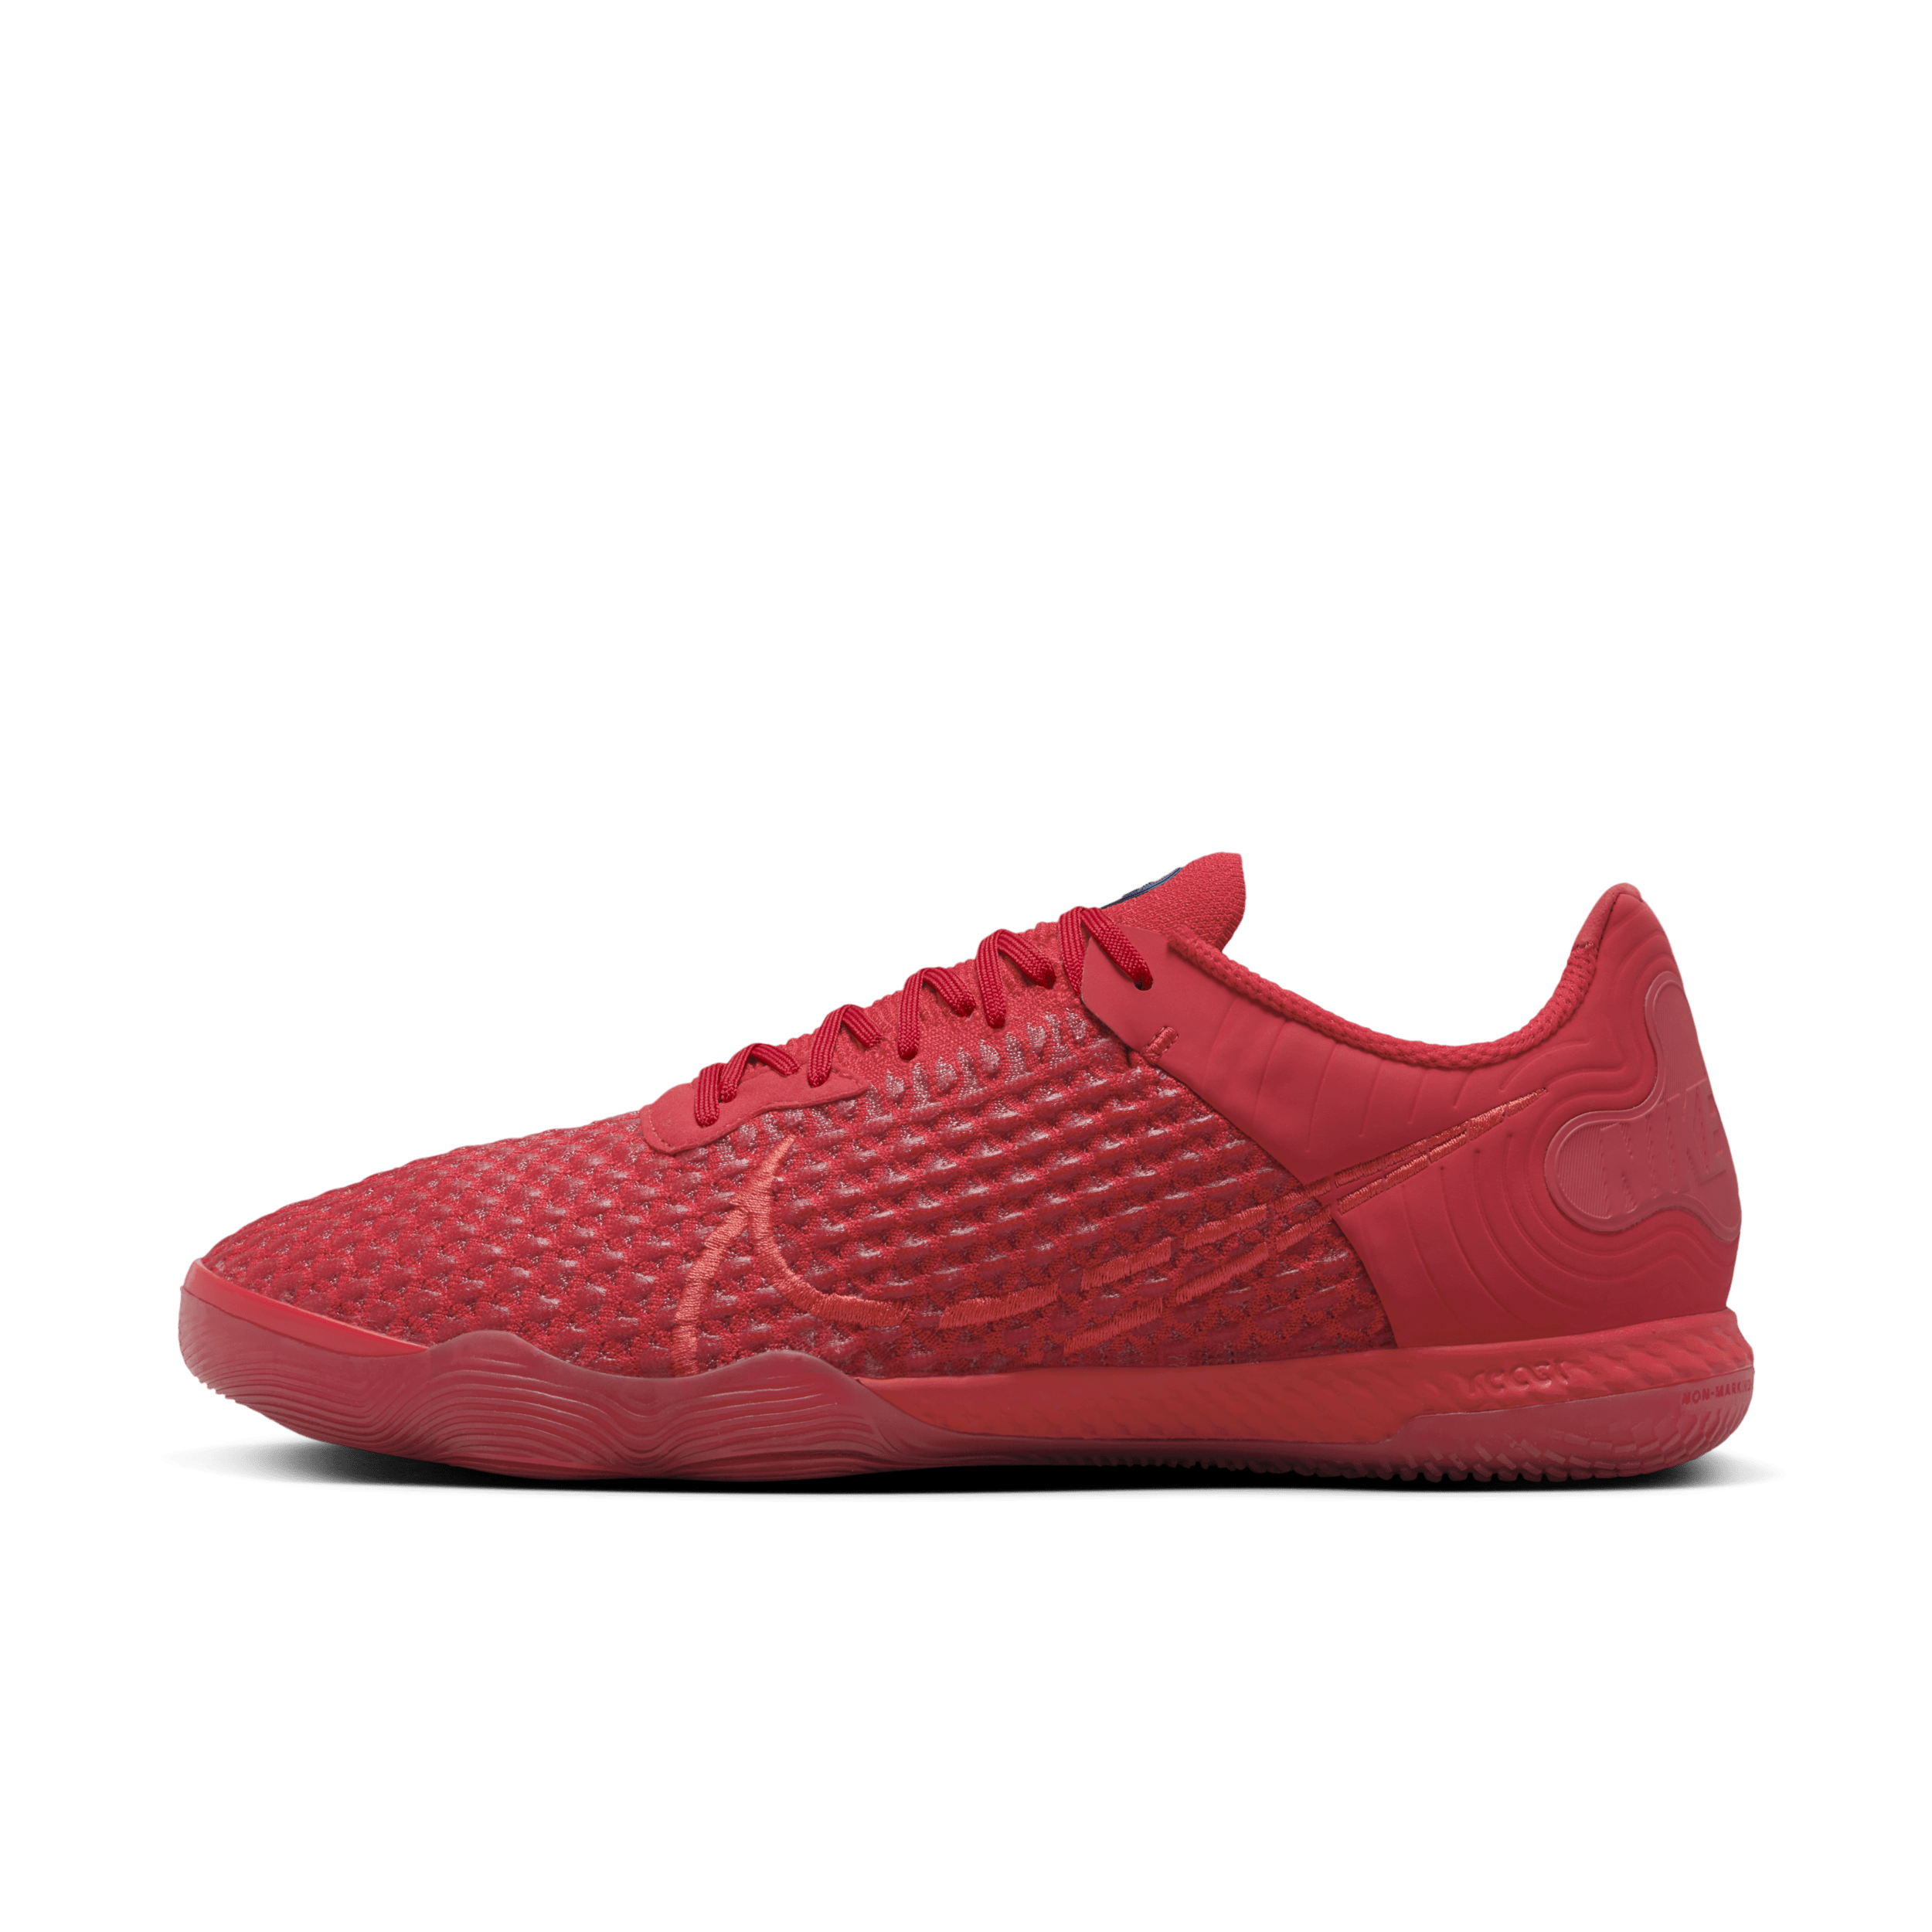 Nike React Gato-fodboldsko (low-top) til brug indendørs - rød